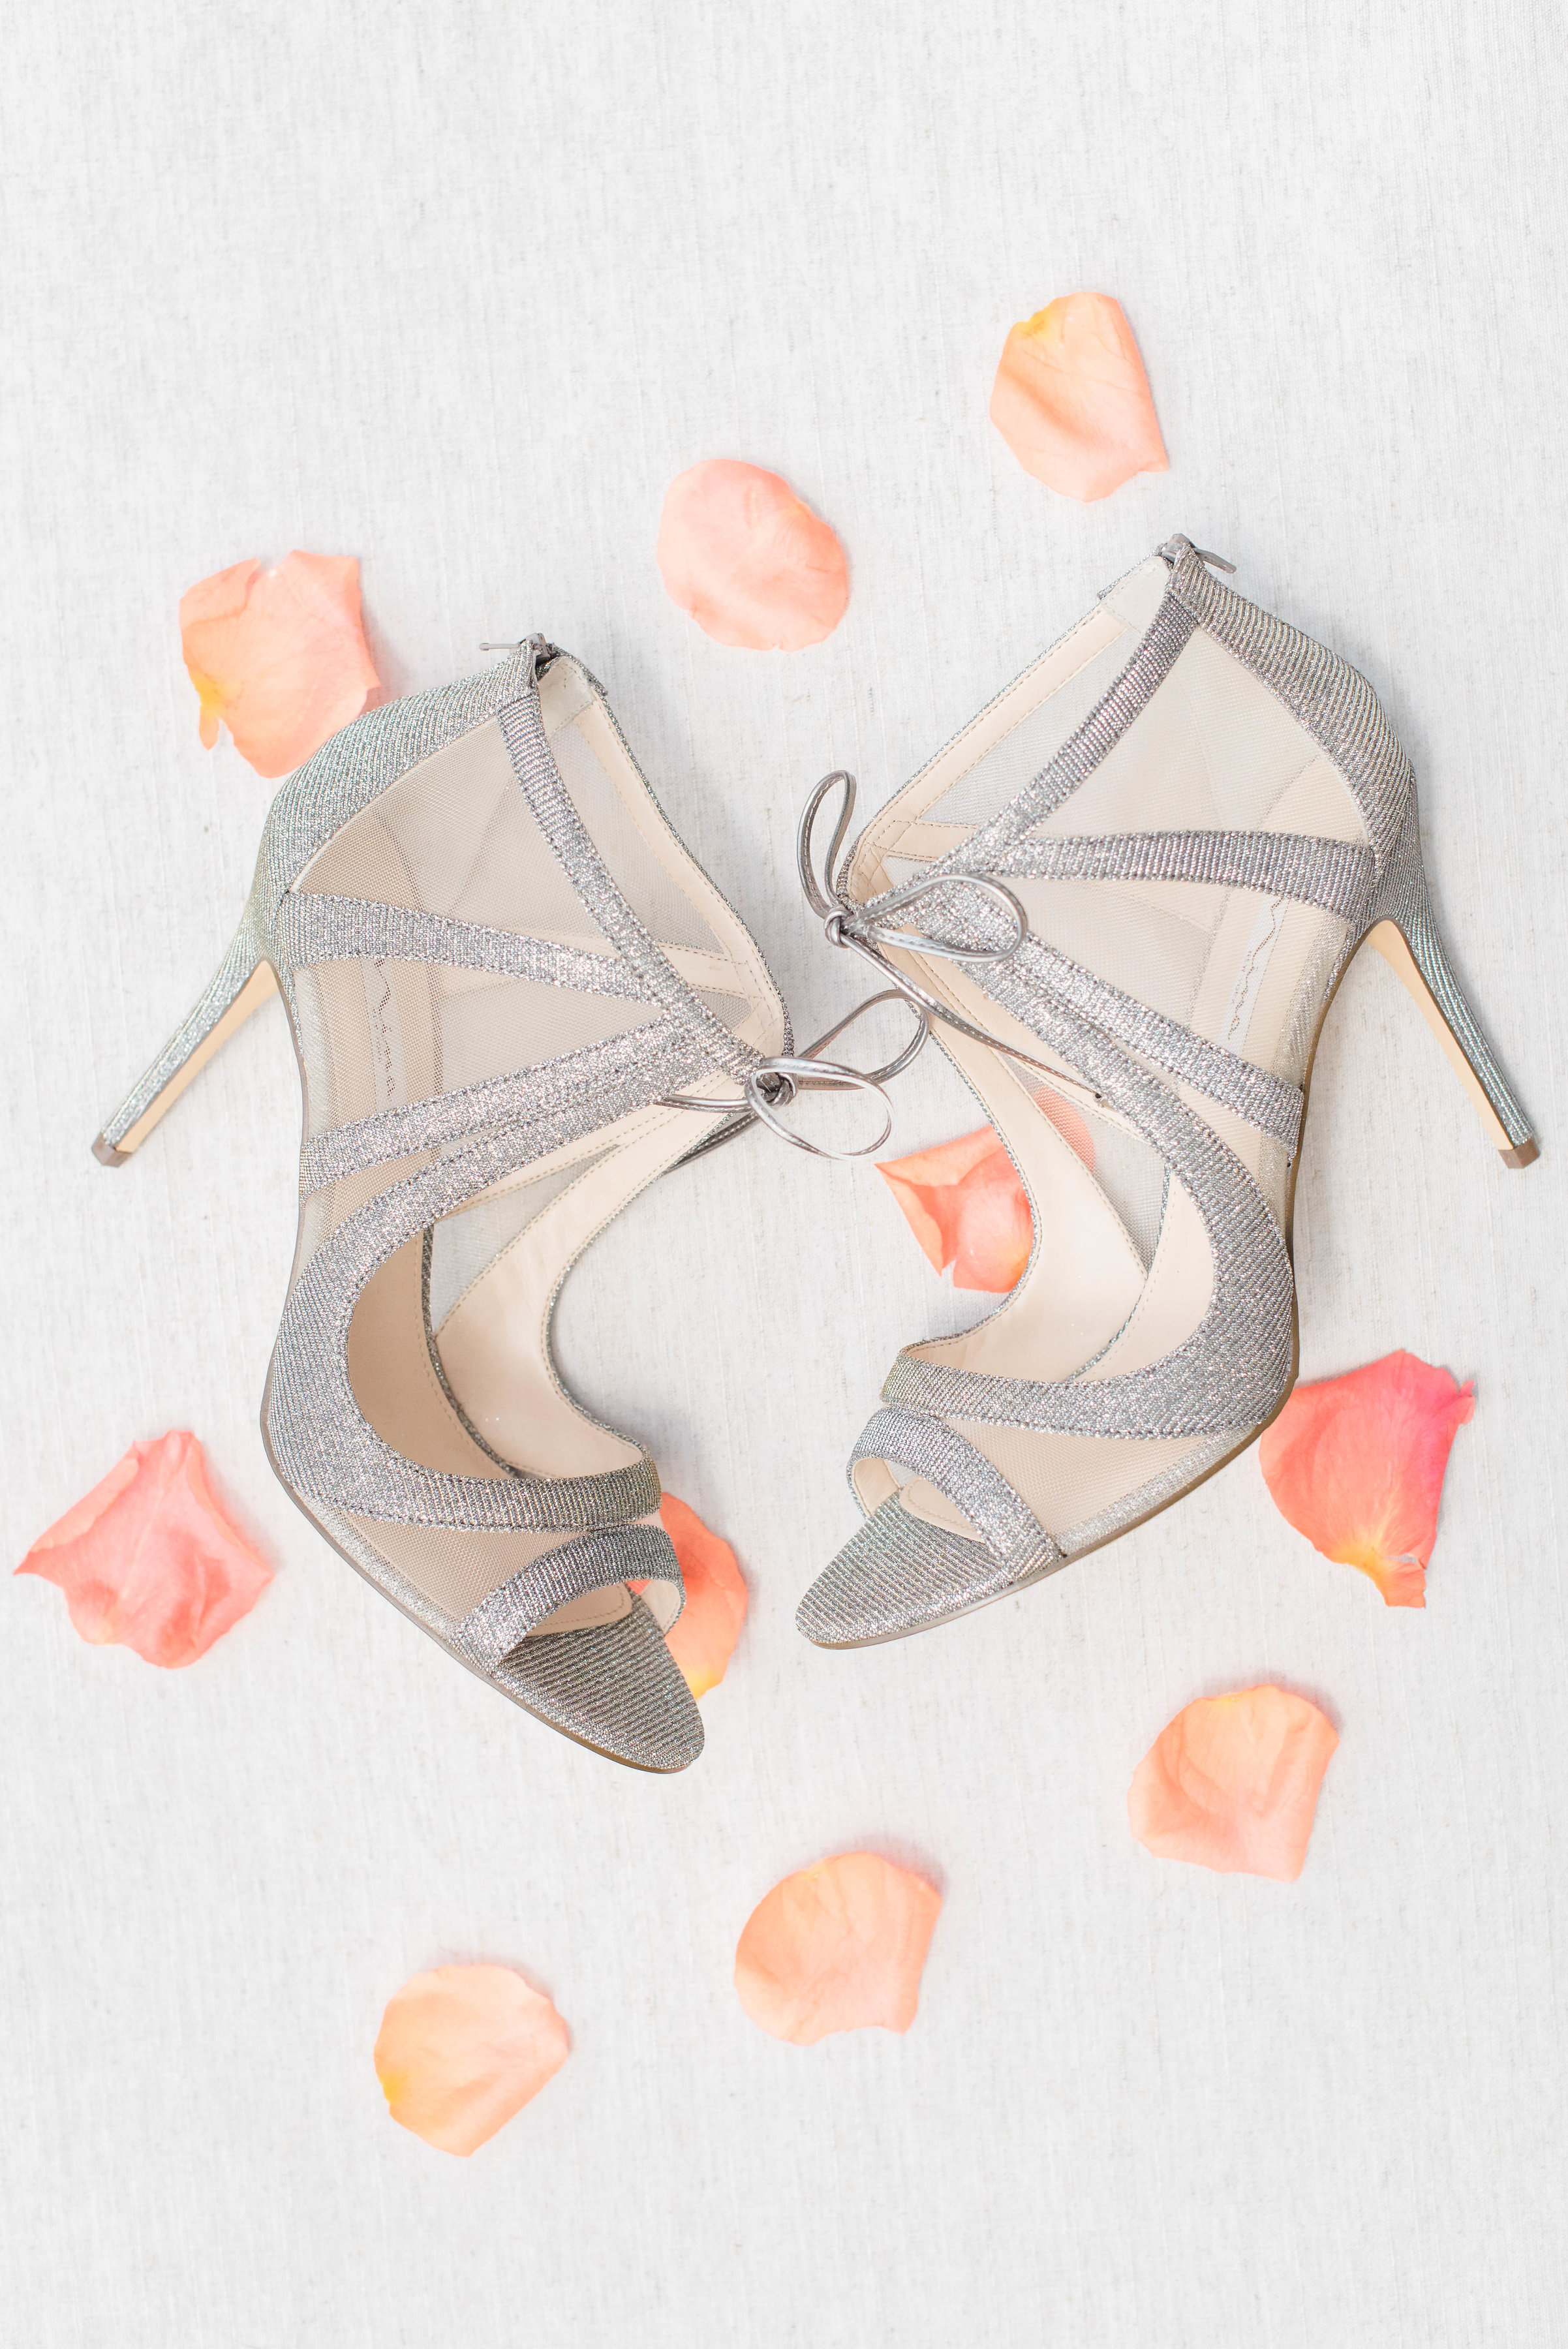 Bridal shoes with rose petals // Nashville Wedding Floral Design